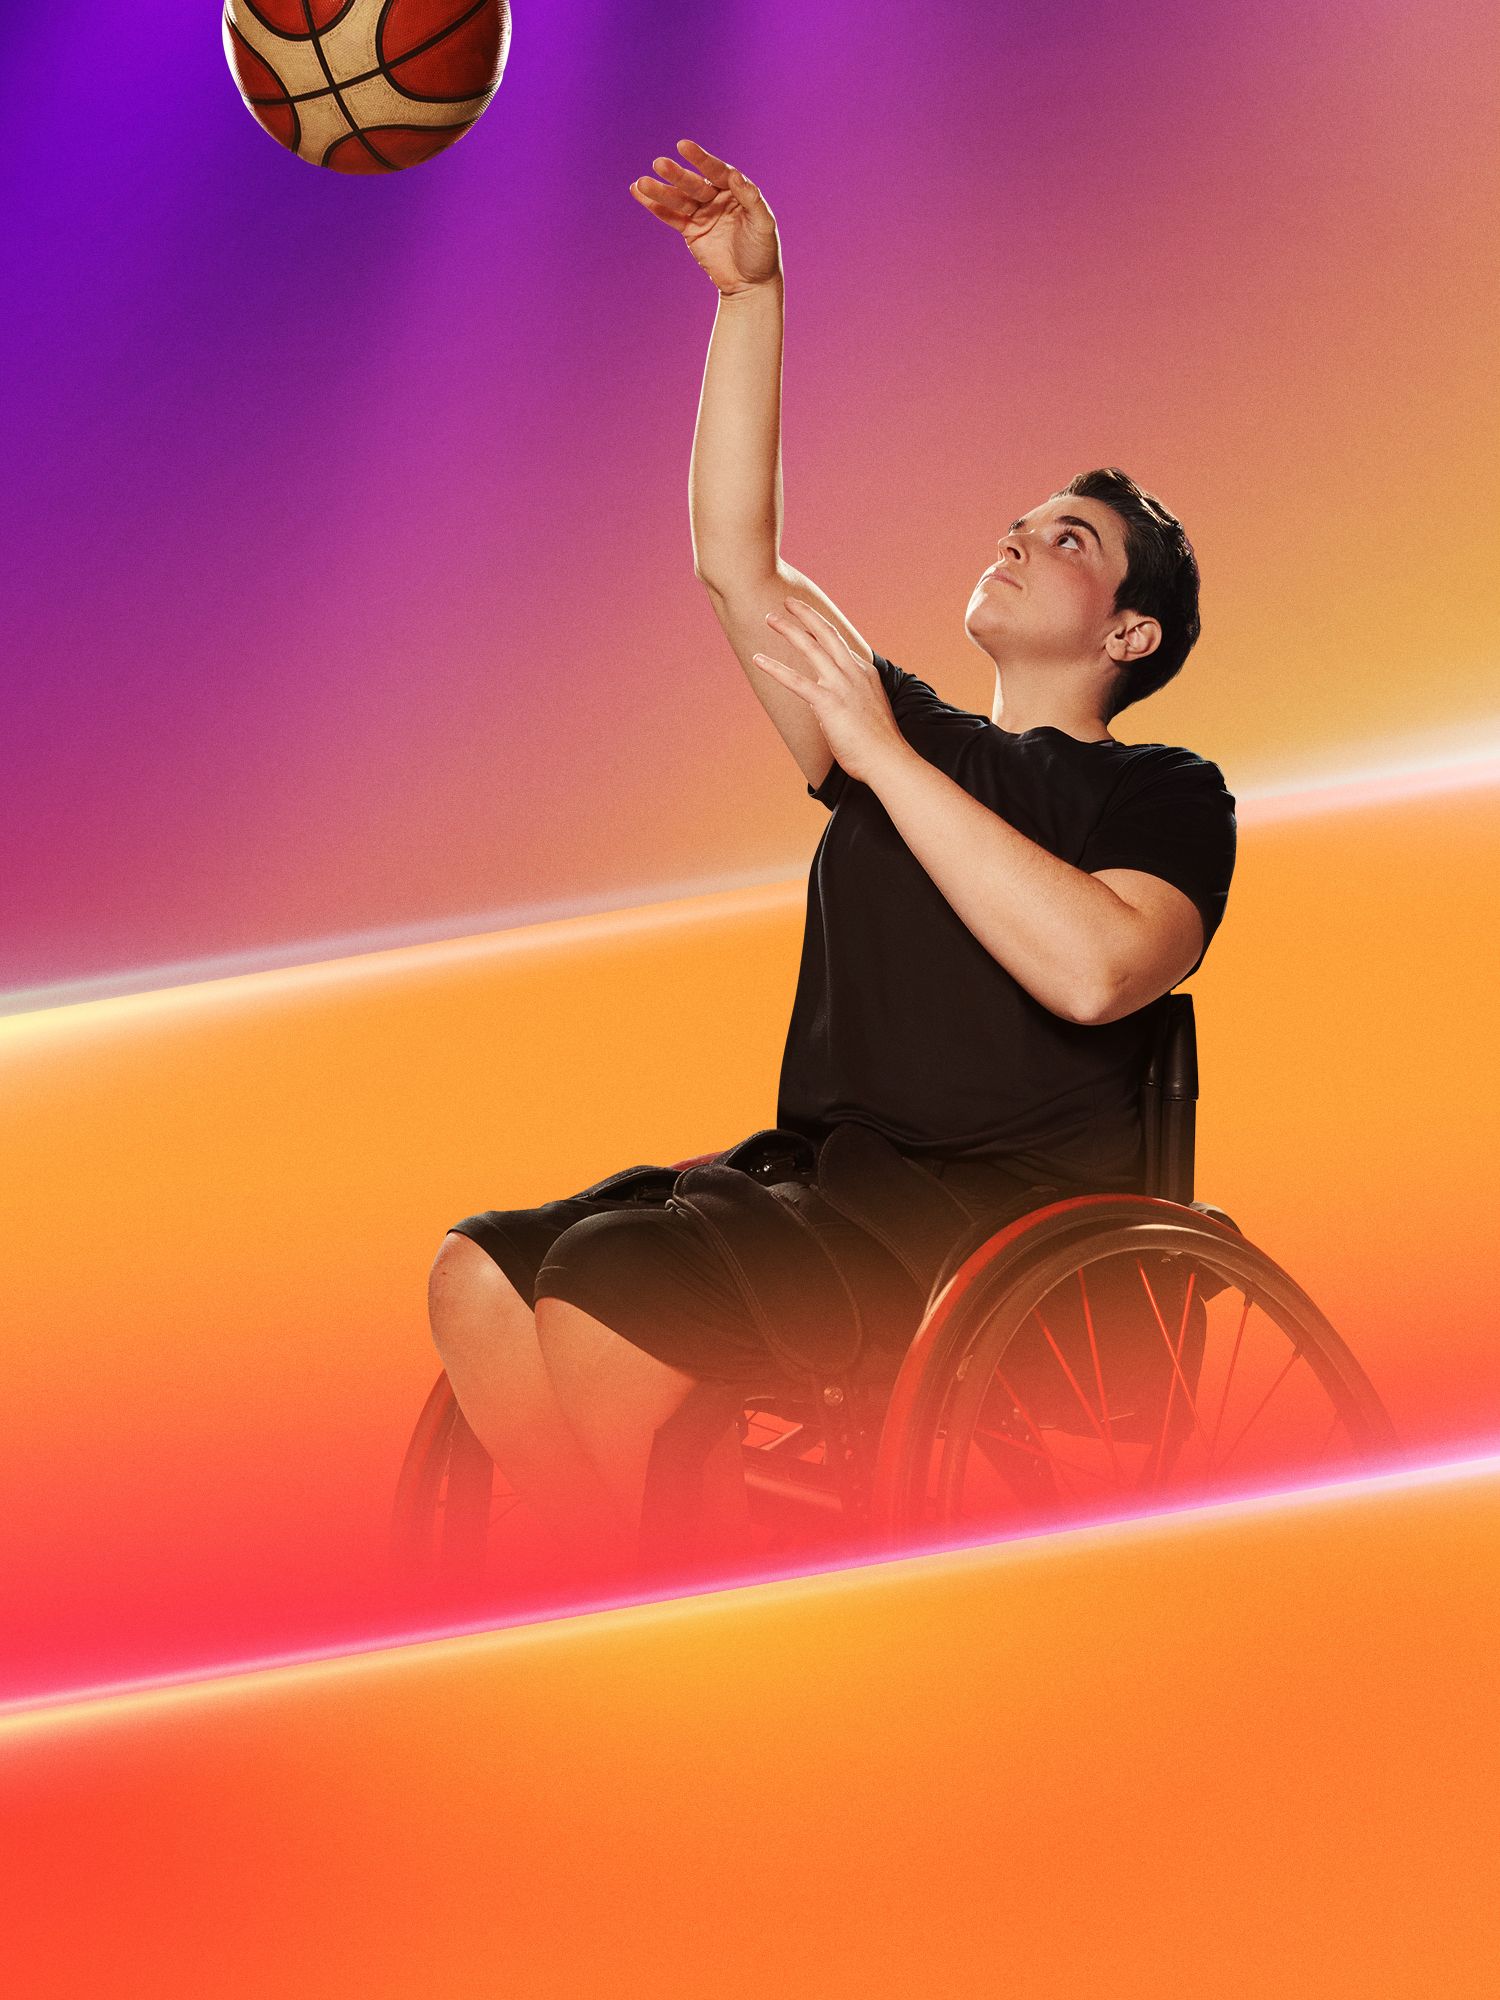 Sofia Fassi Fehri fait un lancer de basketball en fauteuil roulant.